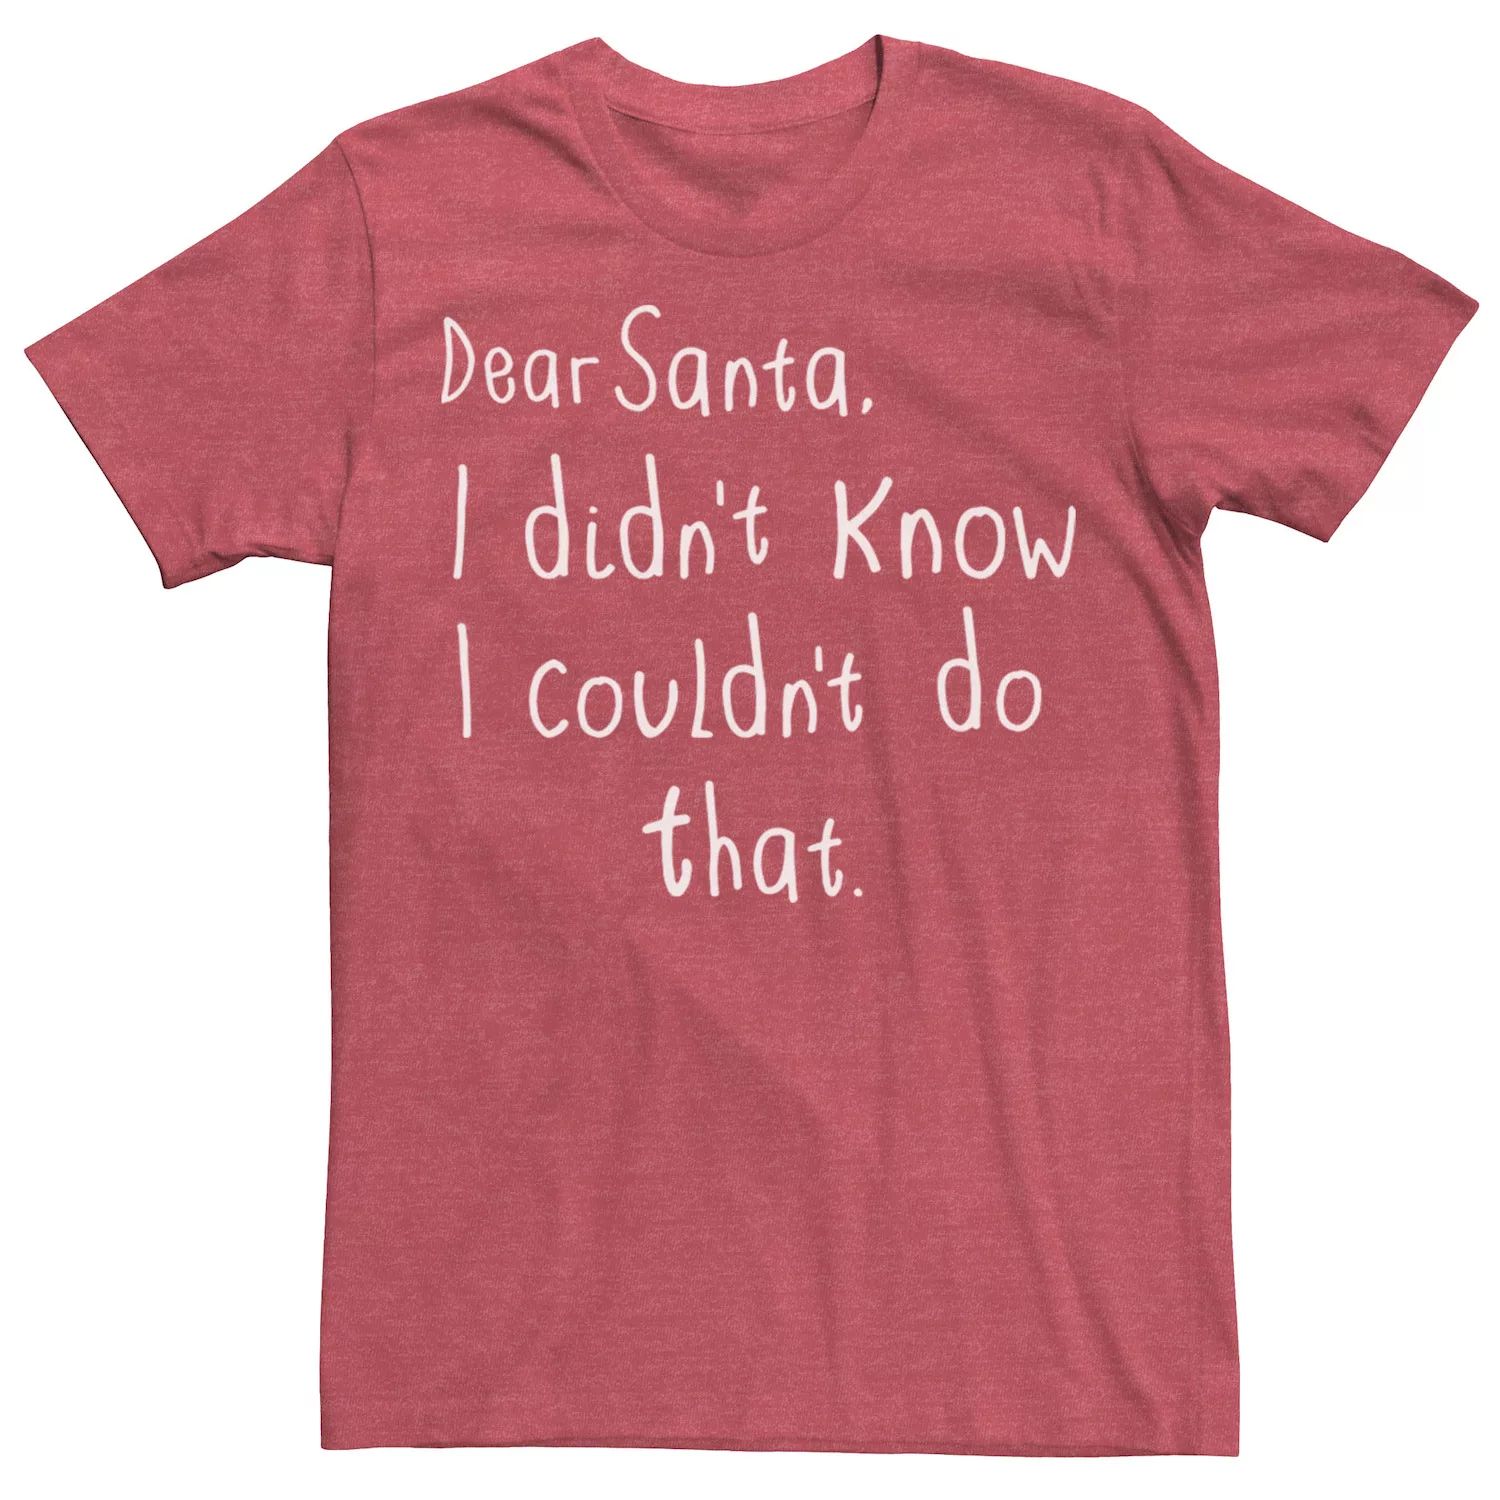 Мужская футболка «Дорогой Санта, я не знал, что не смогу сделать эту футболку» Licensed Character